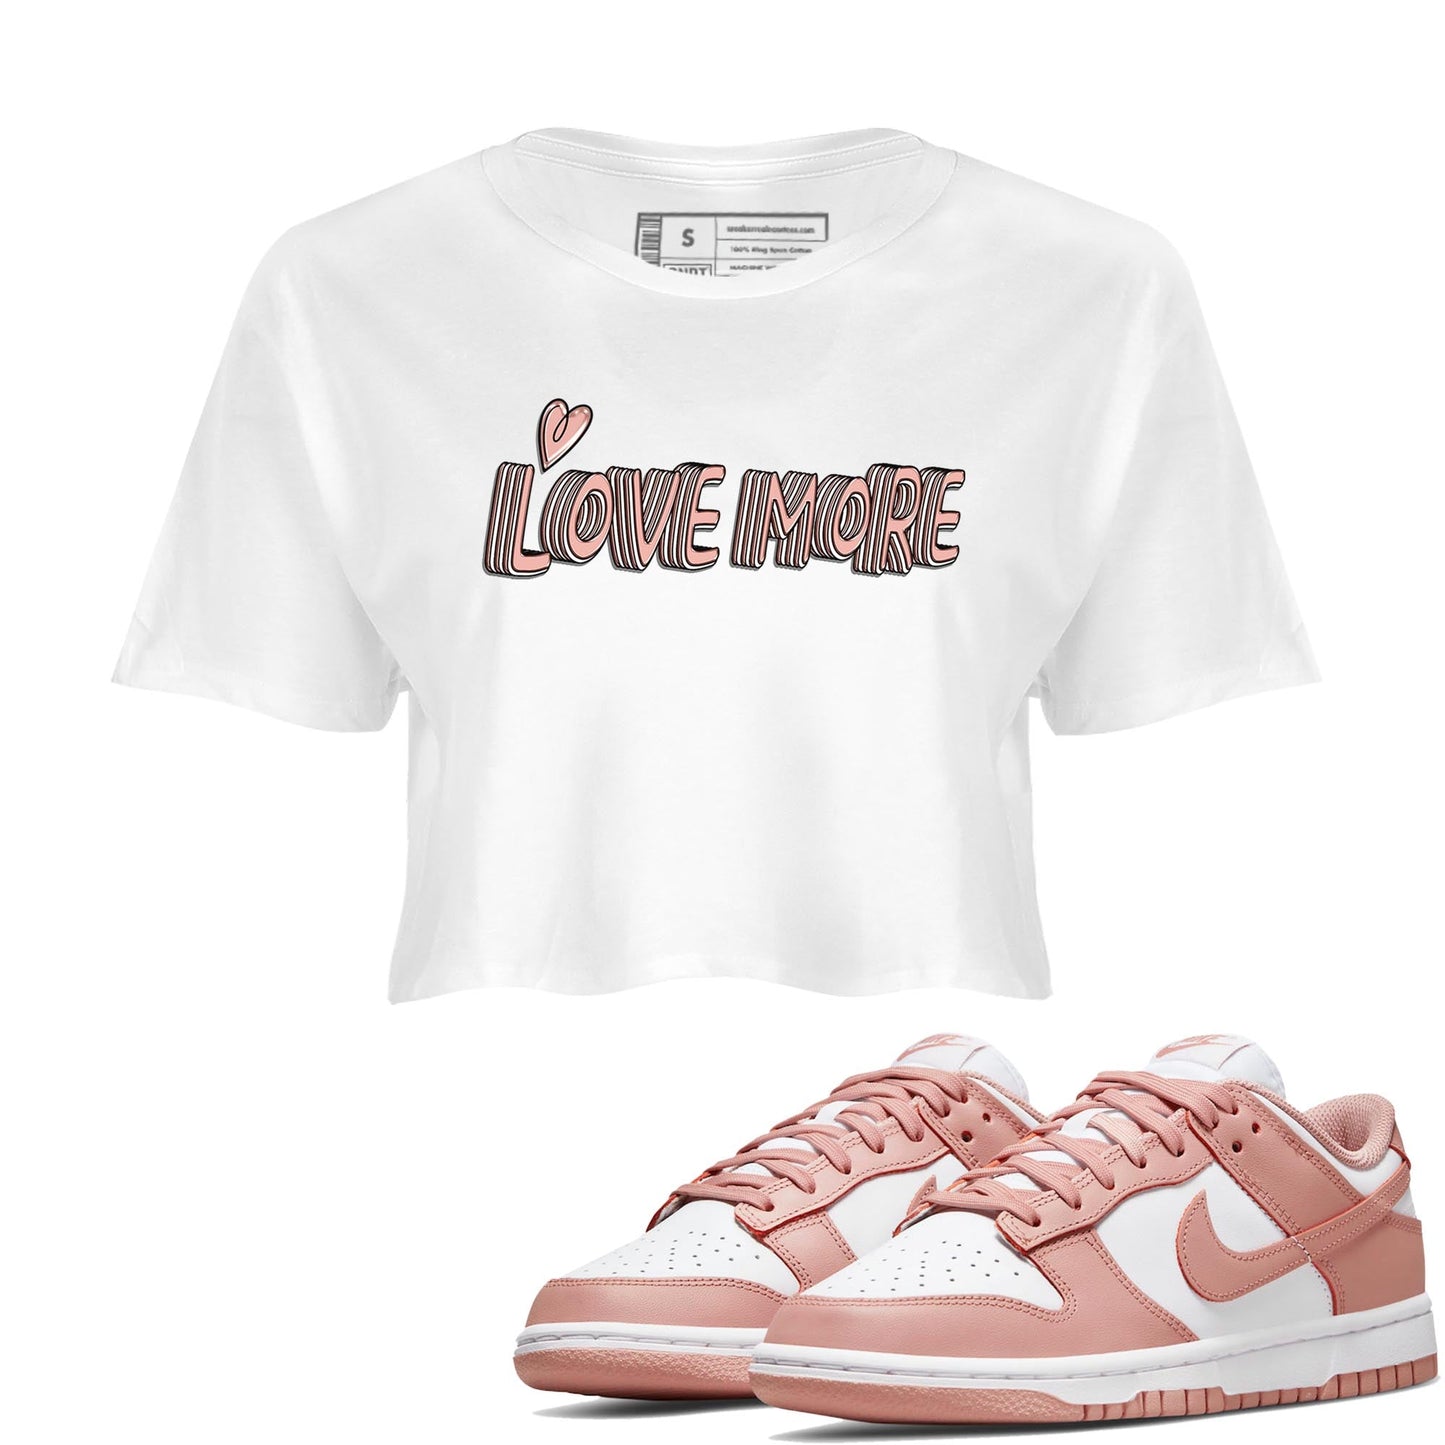 Nike Dunks Low Rose Whisper shirt to match jordans Love More Streetwear Sneaker Shirt Nike Dunk Rose Whisper Drip Gear Zone Sneaker Matching Clothing White 1 Crop T-Shirt